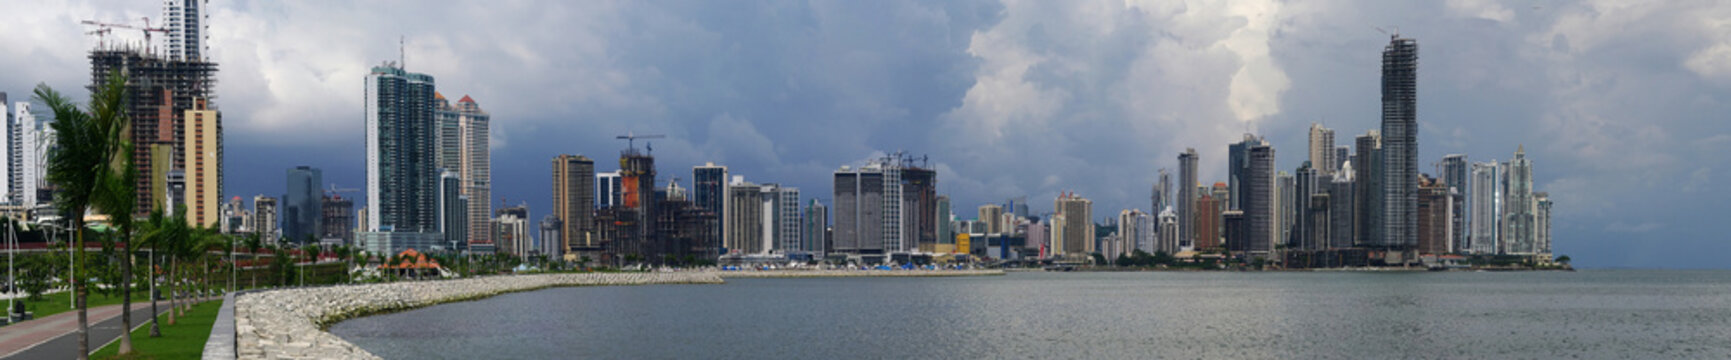 Panorama of Panama City skyline